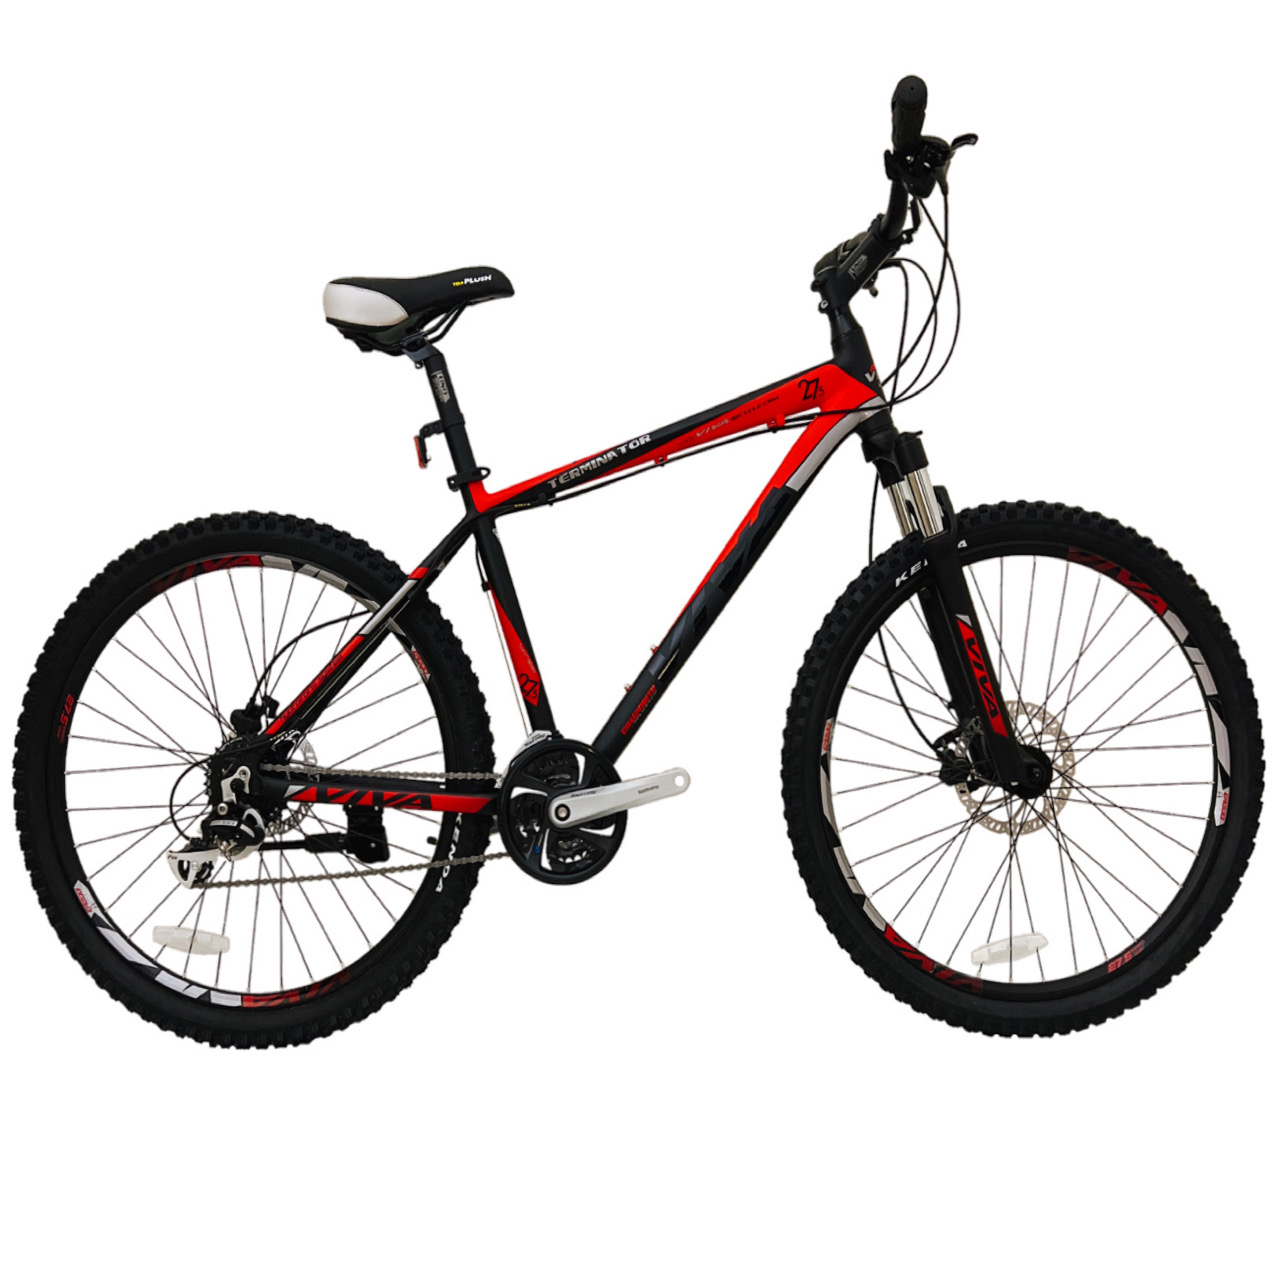 نکته خرید - قیمت روز دوچرخه کوهستان ویوا مدل TERMINATOR کد هیدرولیک سایز 27.5 خرید